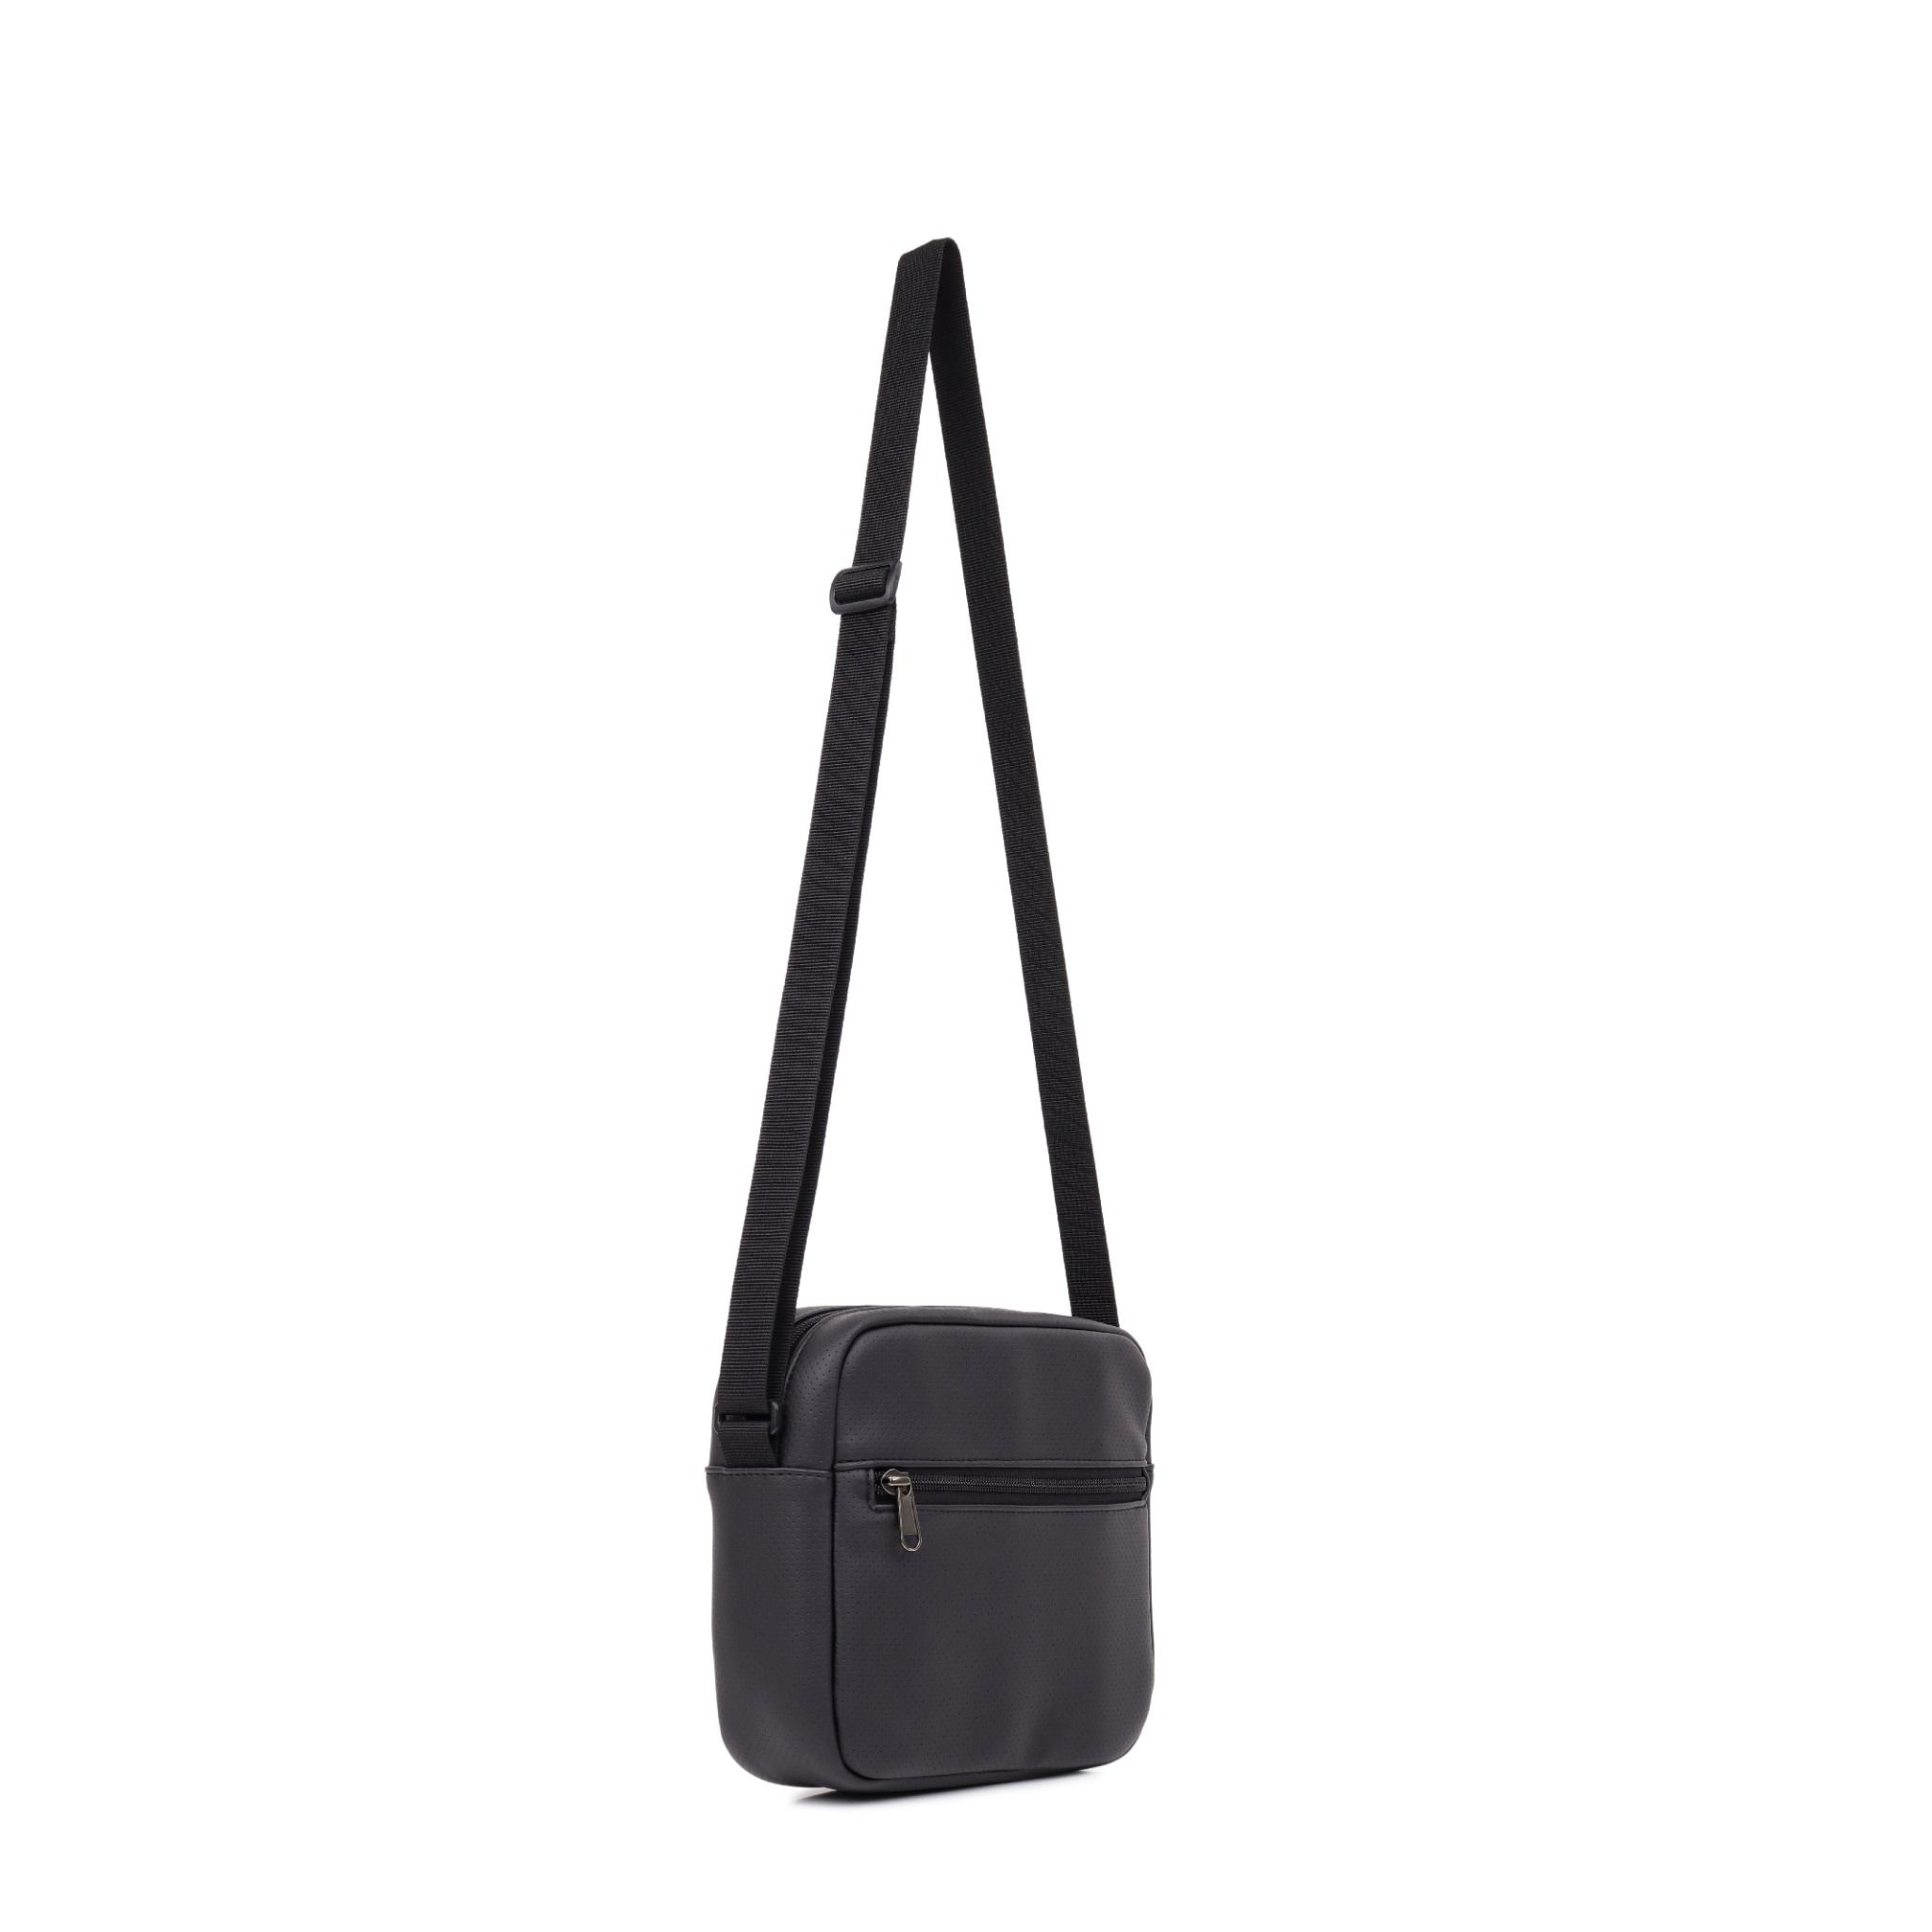  Scarab Heritage Leather Shoulder Bag - Black 